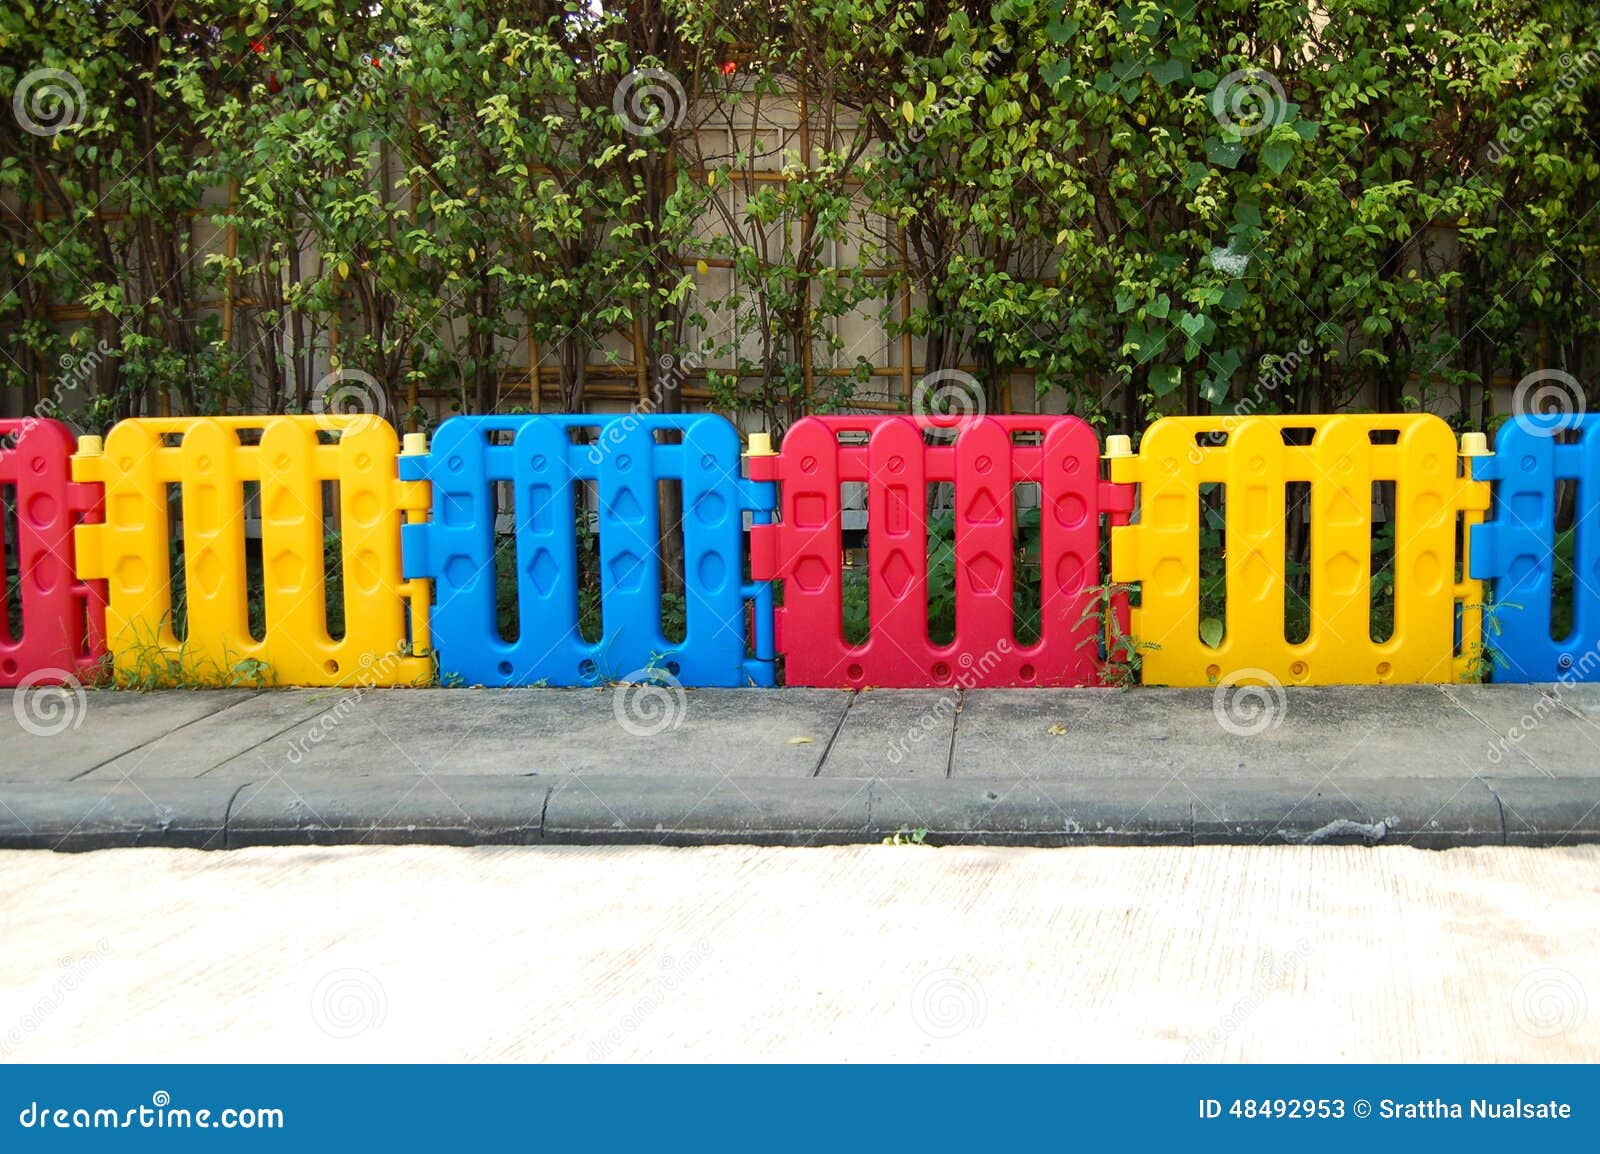 doe alstublieft niet Dank je applaus Plastic Omheining Voor Kind Stock Afbeelding - Image of nave, speelplaats:  48492953